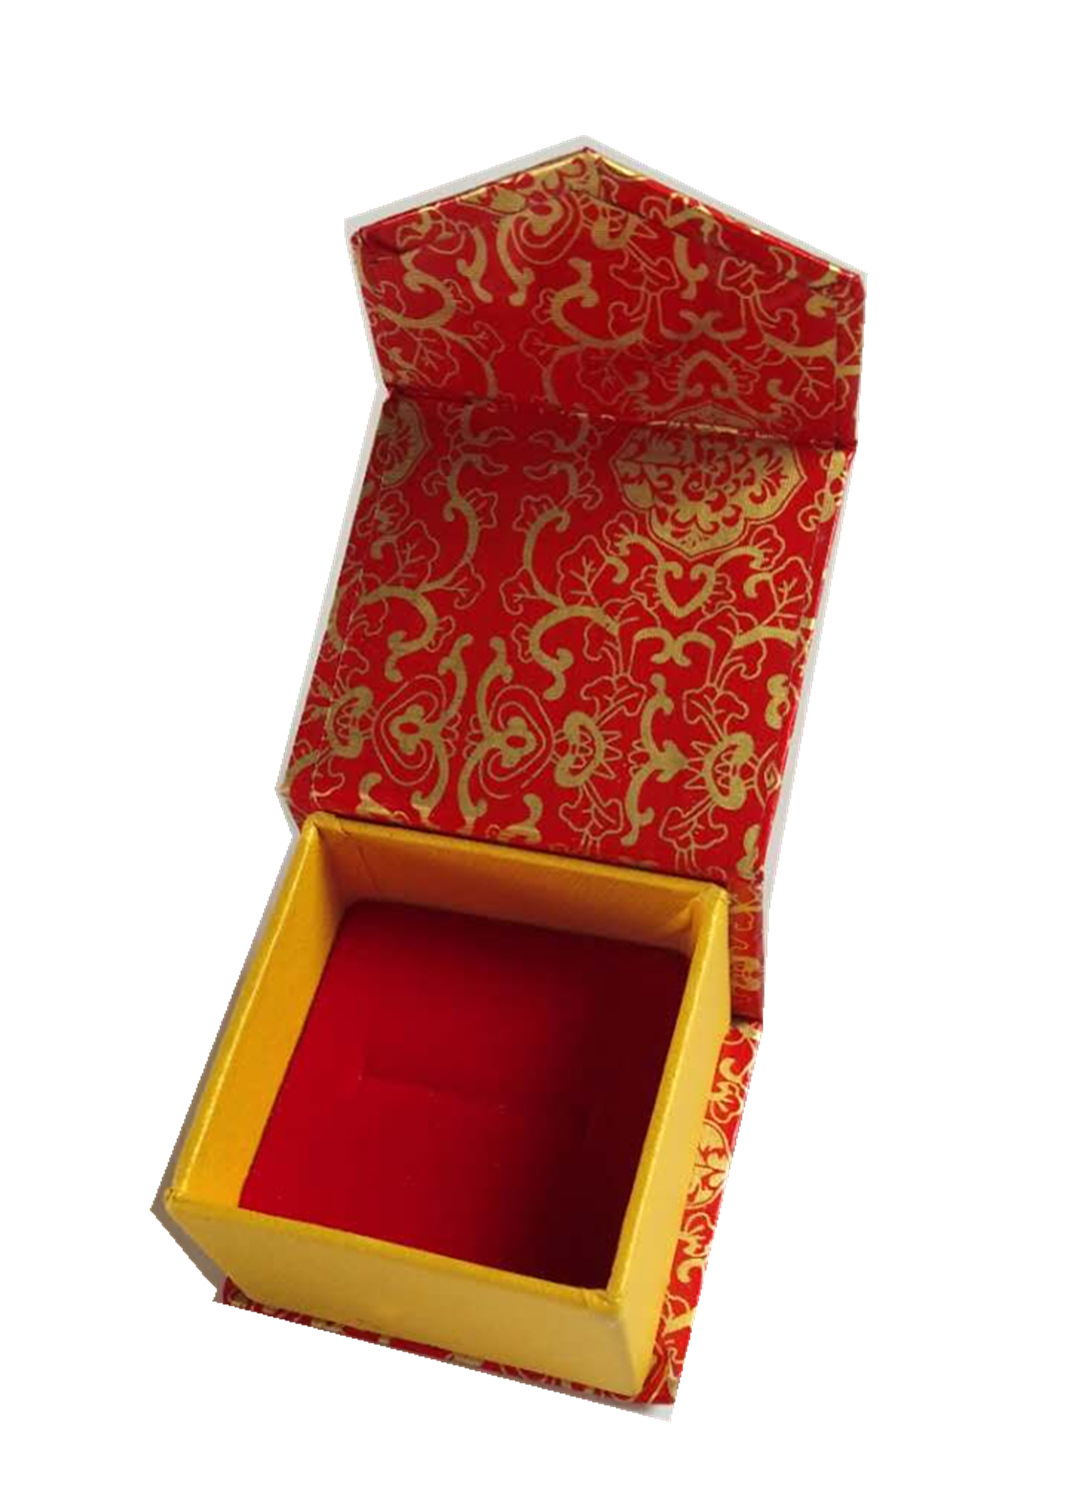 工厂直销纸盒饰品包装盒小礼品盒黑色纸盒首饰盒红色饰品礼盒蓝色|ru